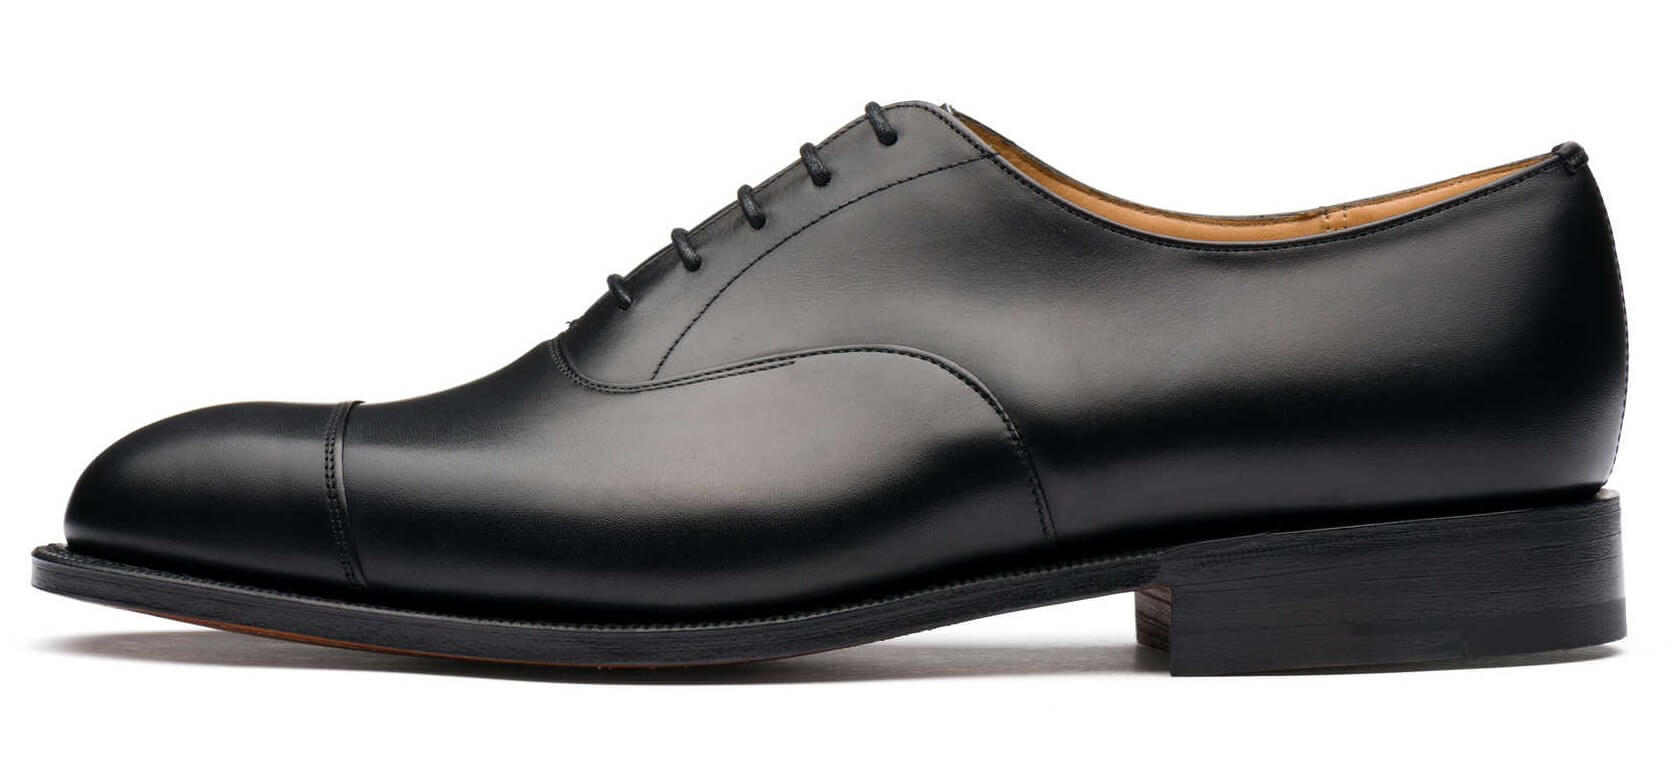 チャーチ コンサル(Church's Consul)の魅力に迫る。英国が誇る名作革靴 